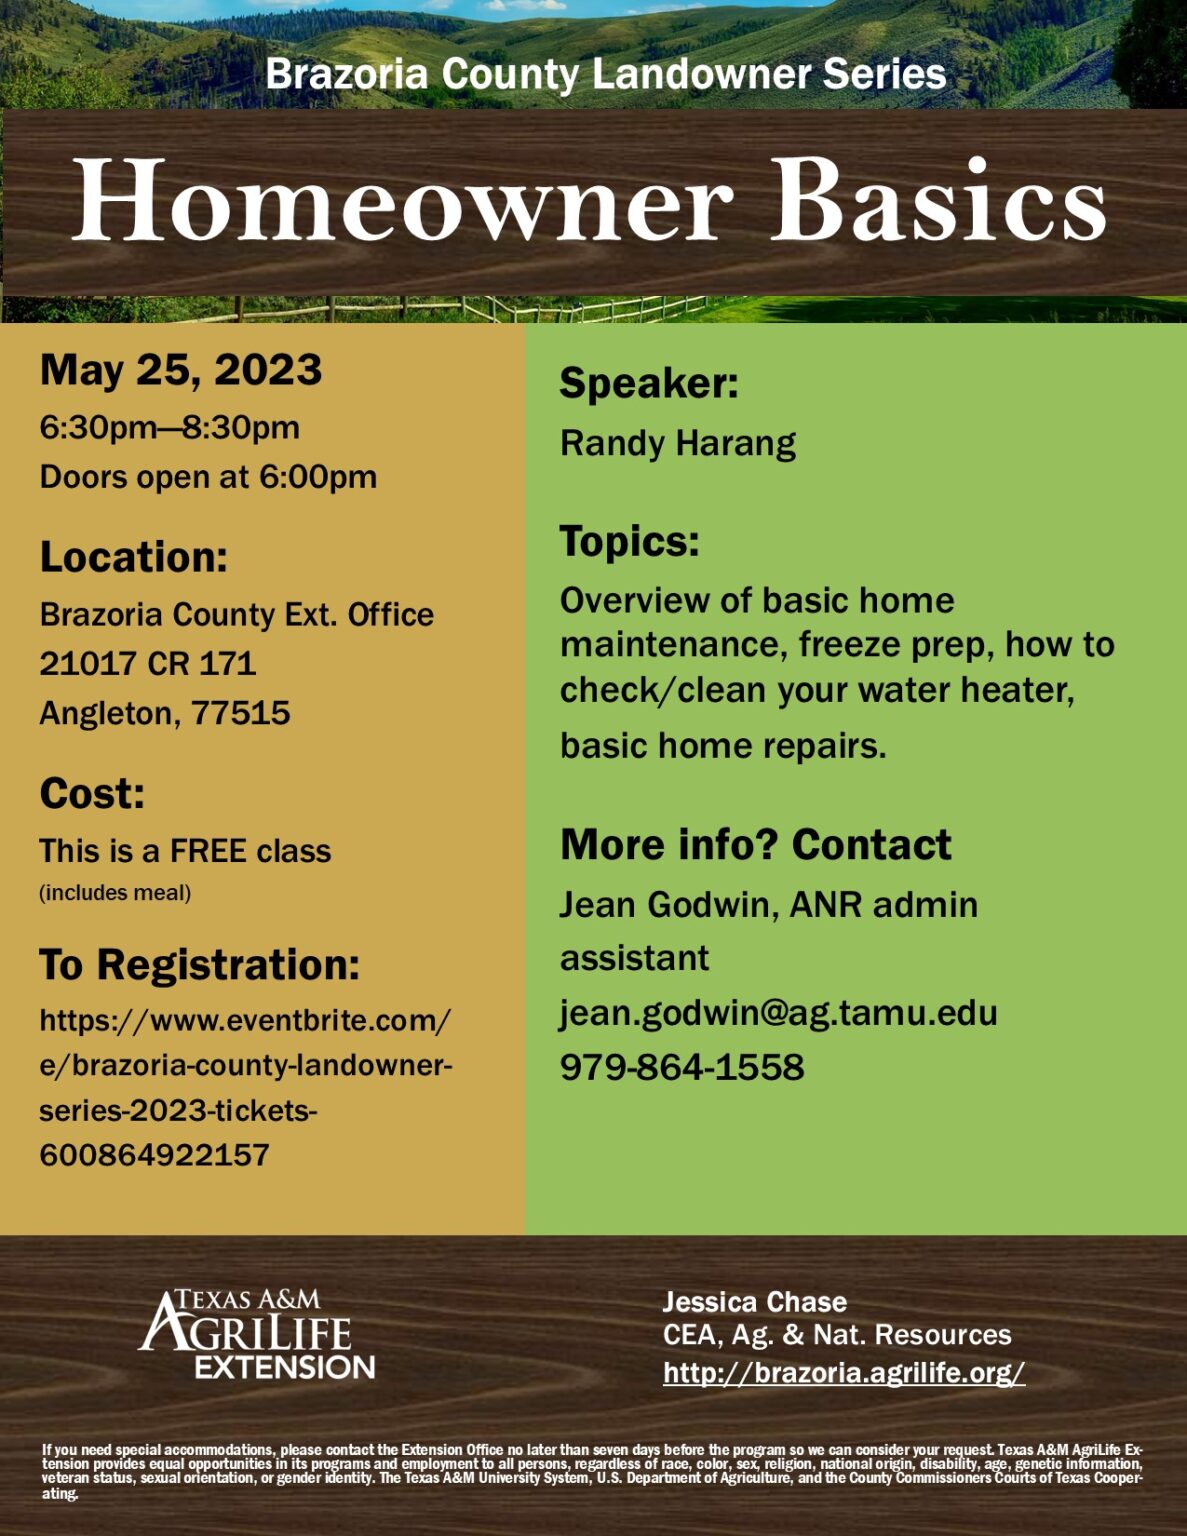 Homeowner Basics flyer5_25_23